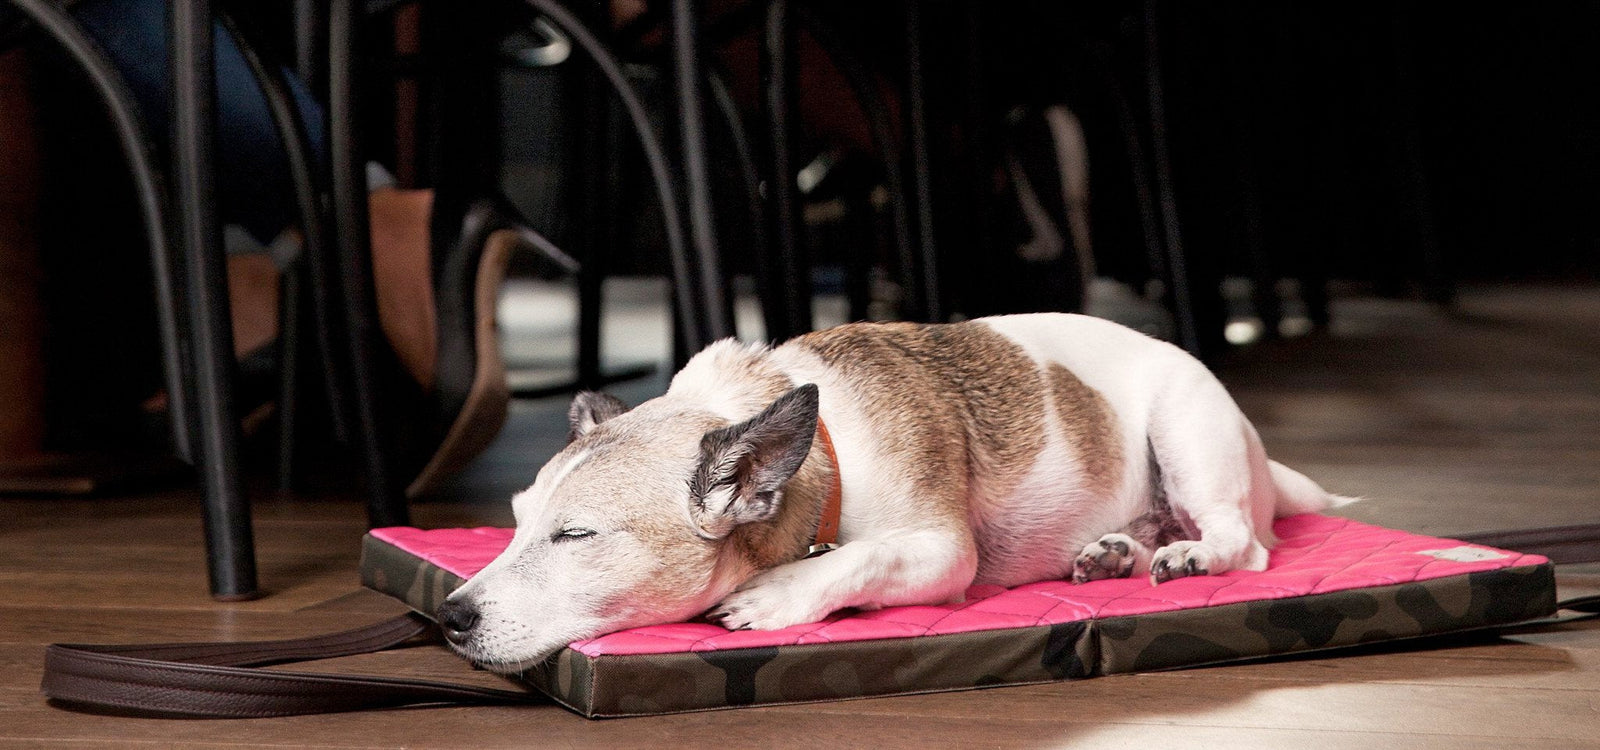 KONA CAVE® - Ihr Hund braucht ein Reisebett für Sicherheit und Komfort